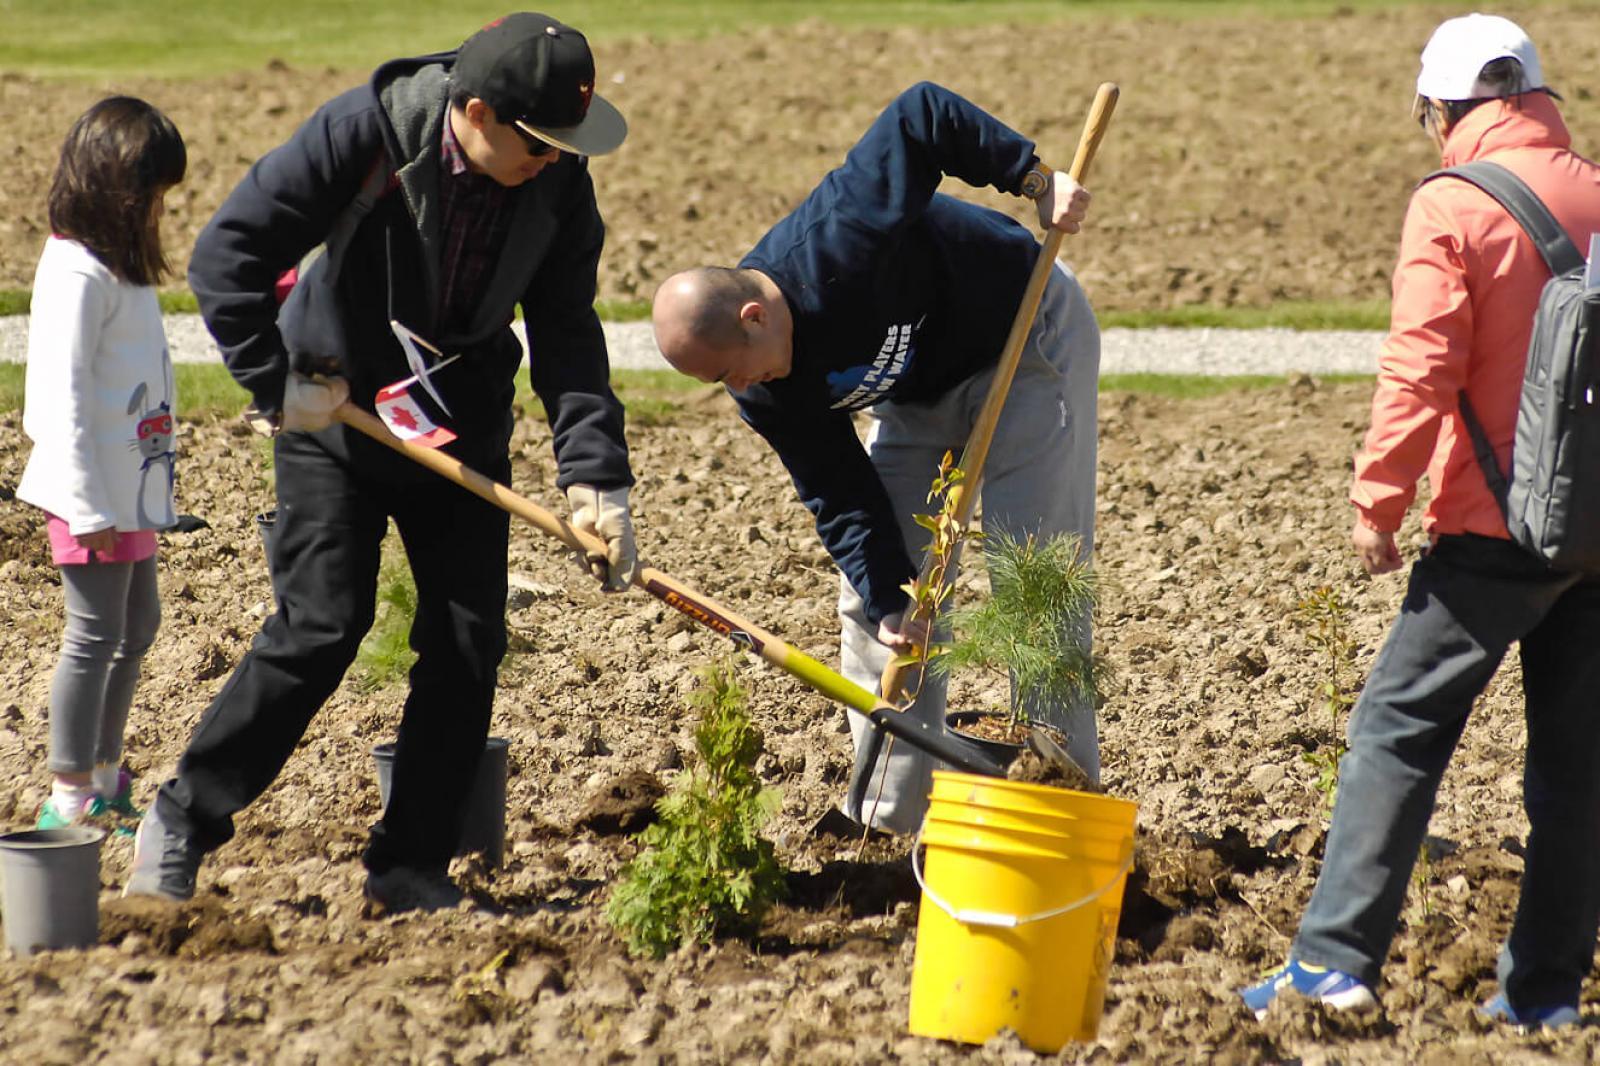 Vineland soil remediation workshop and tree planting